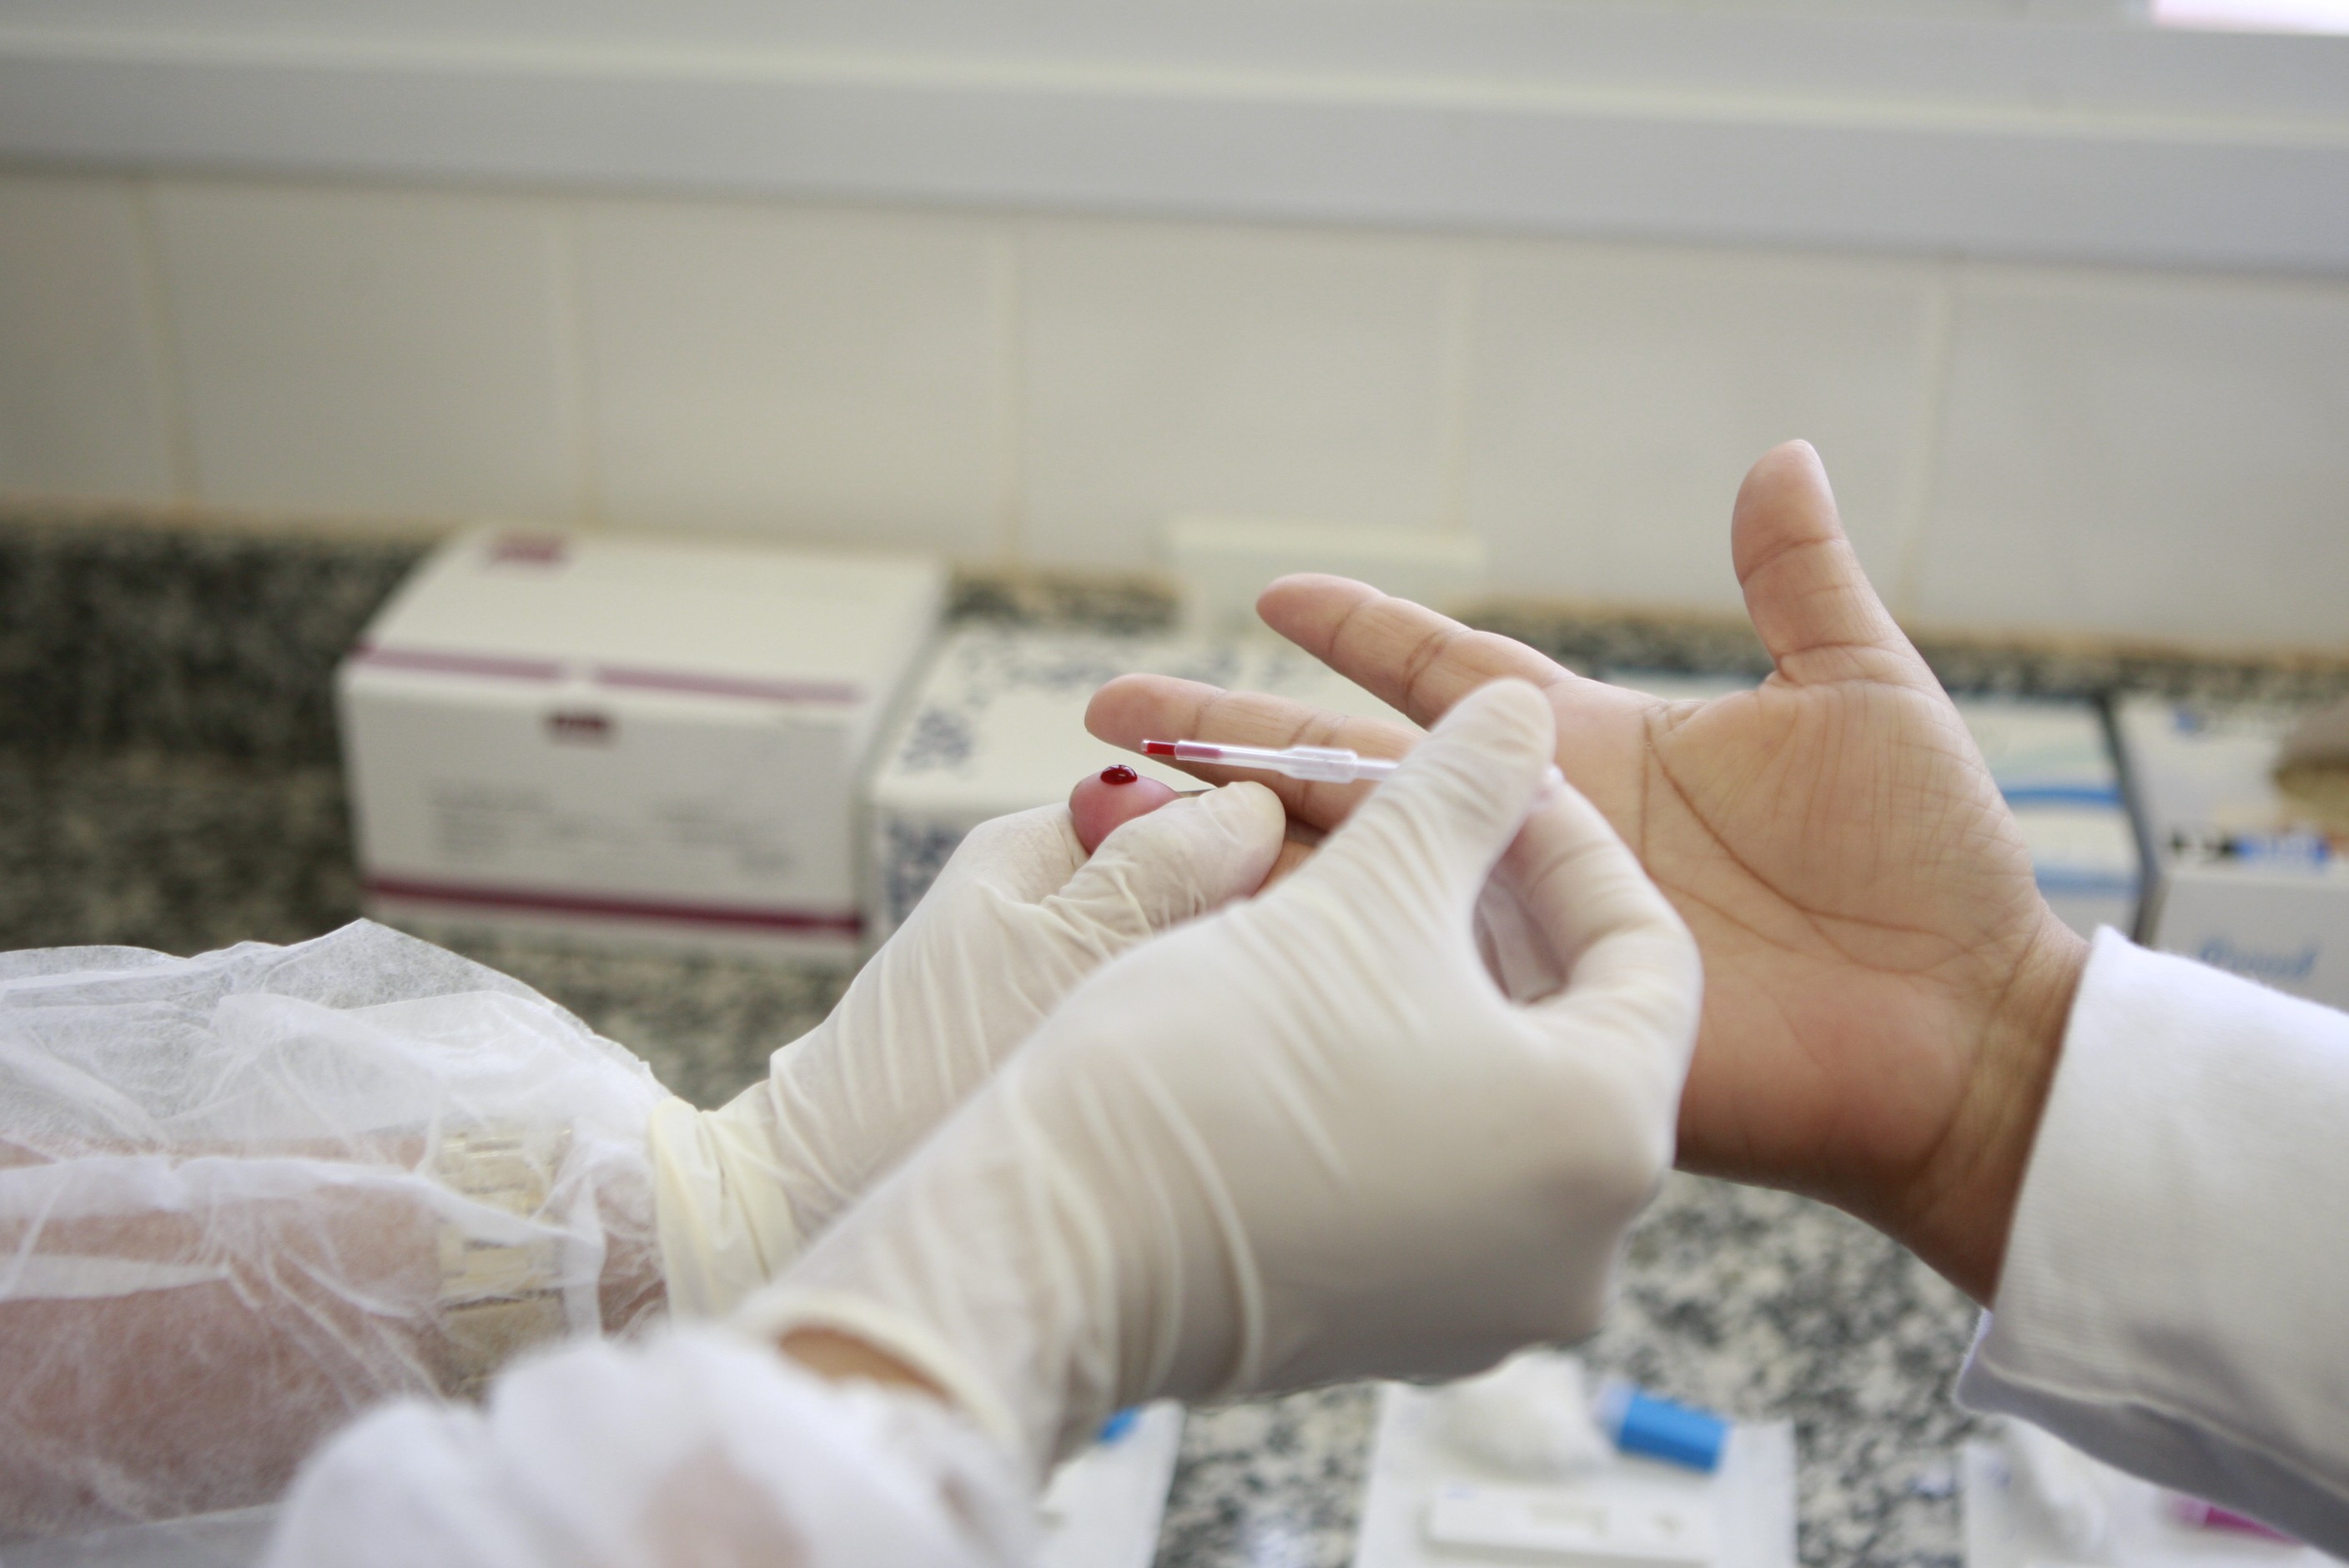 Aids: Uberlândia registra maior número de diagnósticos da doença em cinco anos